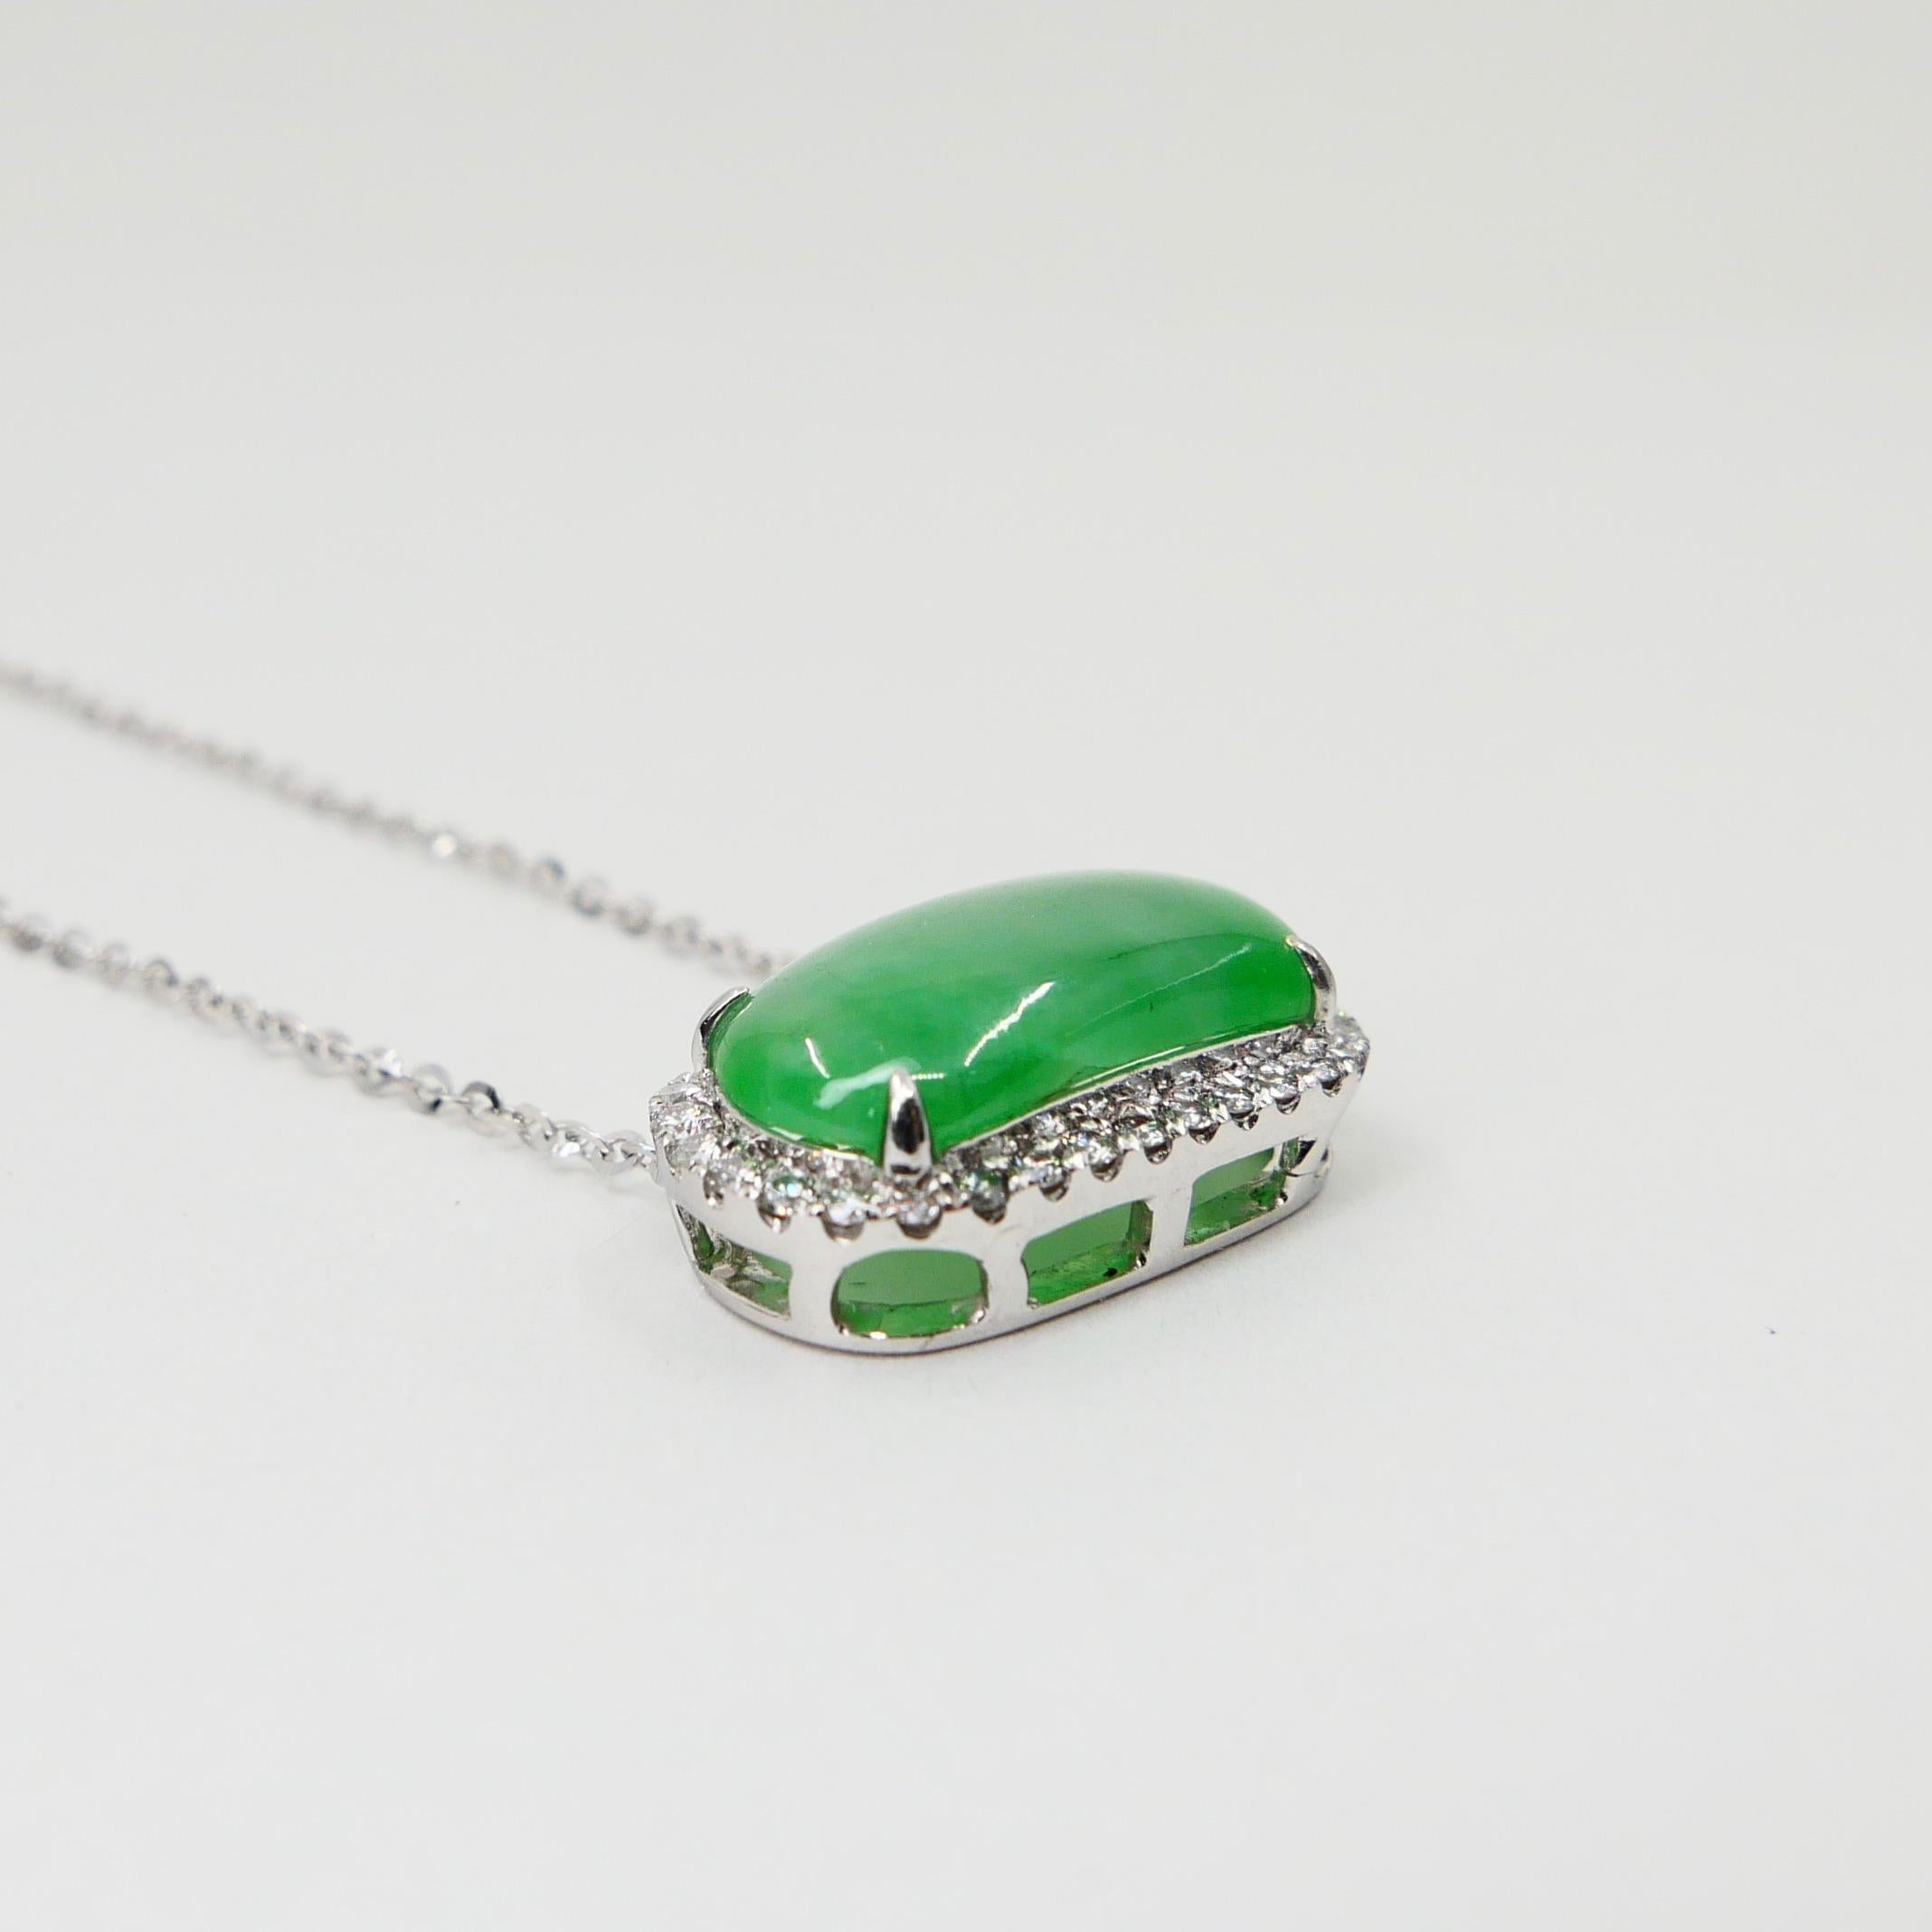 Certified Type A Jadeite Jade Diamond Pendant Drop Necklace, Apple Green Color For Sale 8